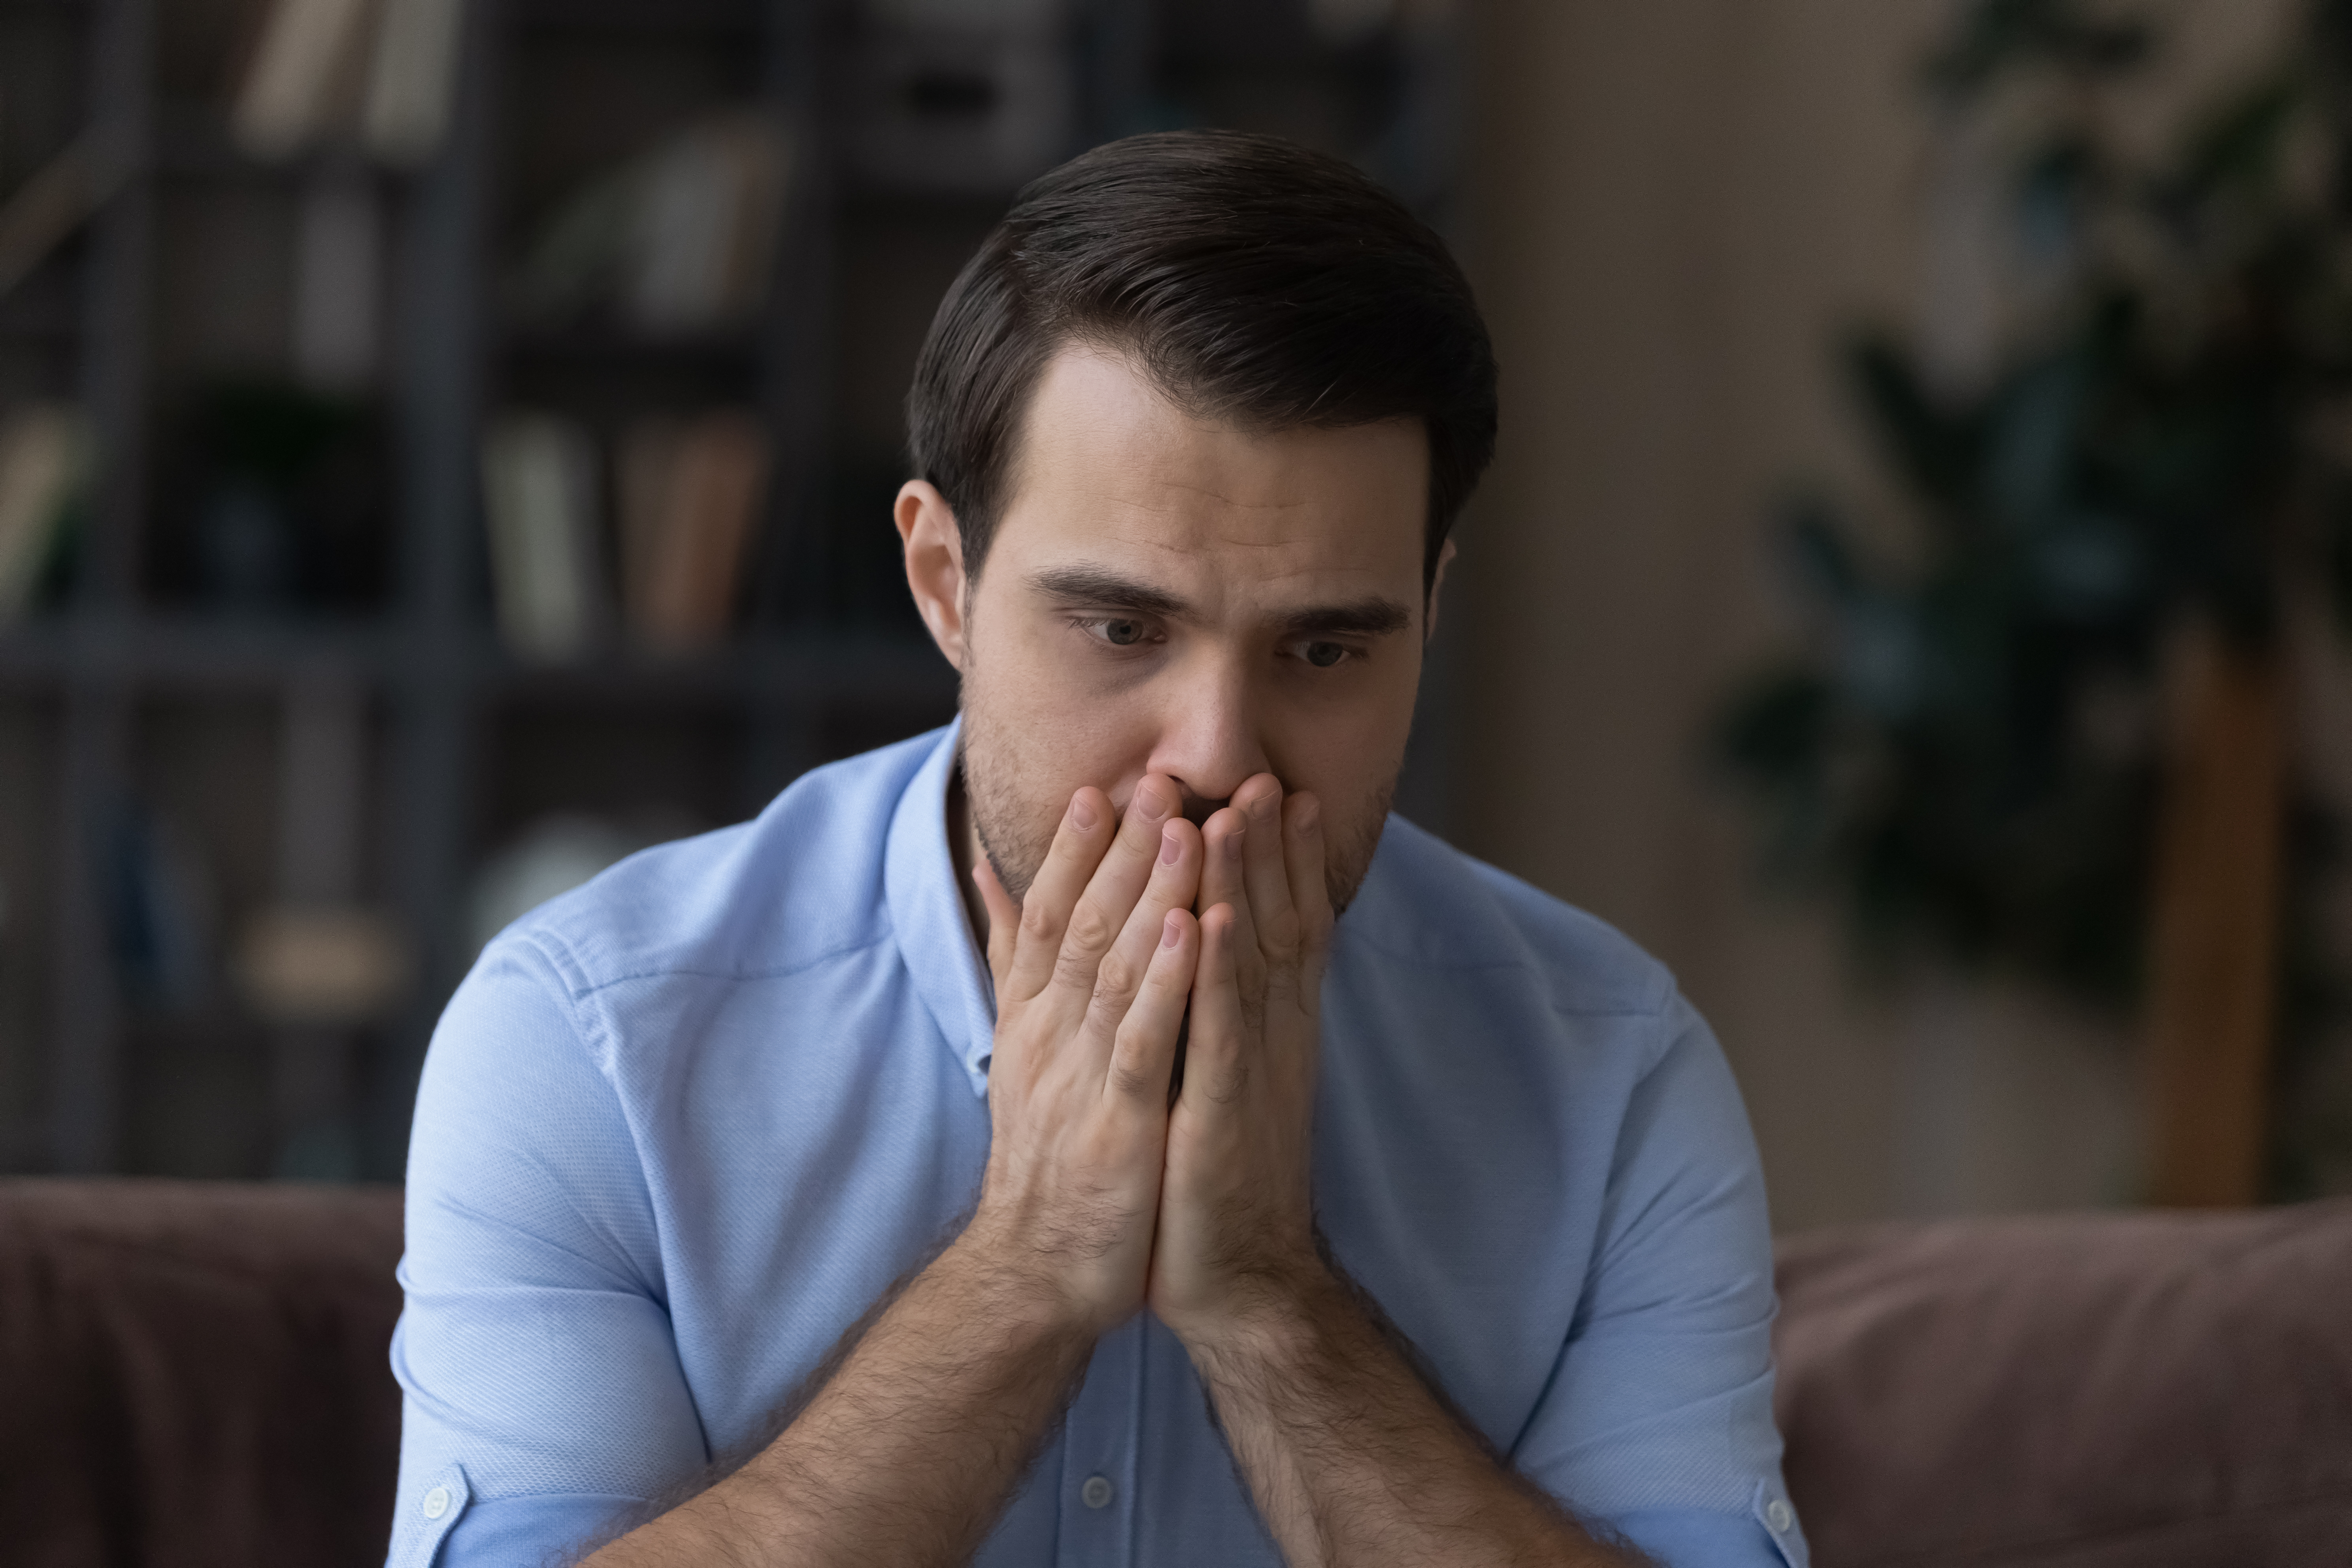 A man feeling nervous | Source: Shutterstock